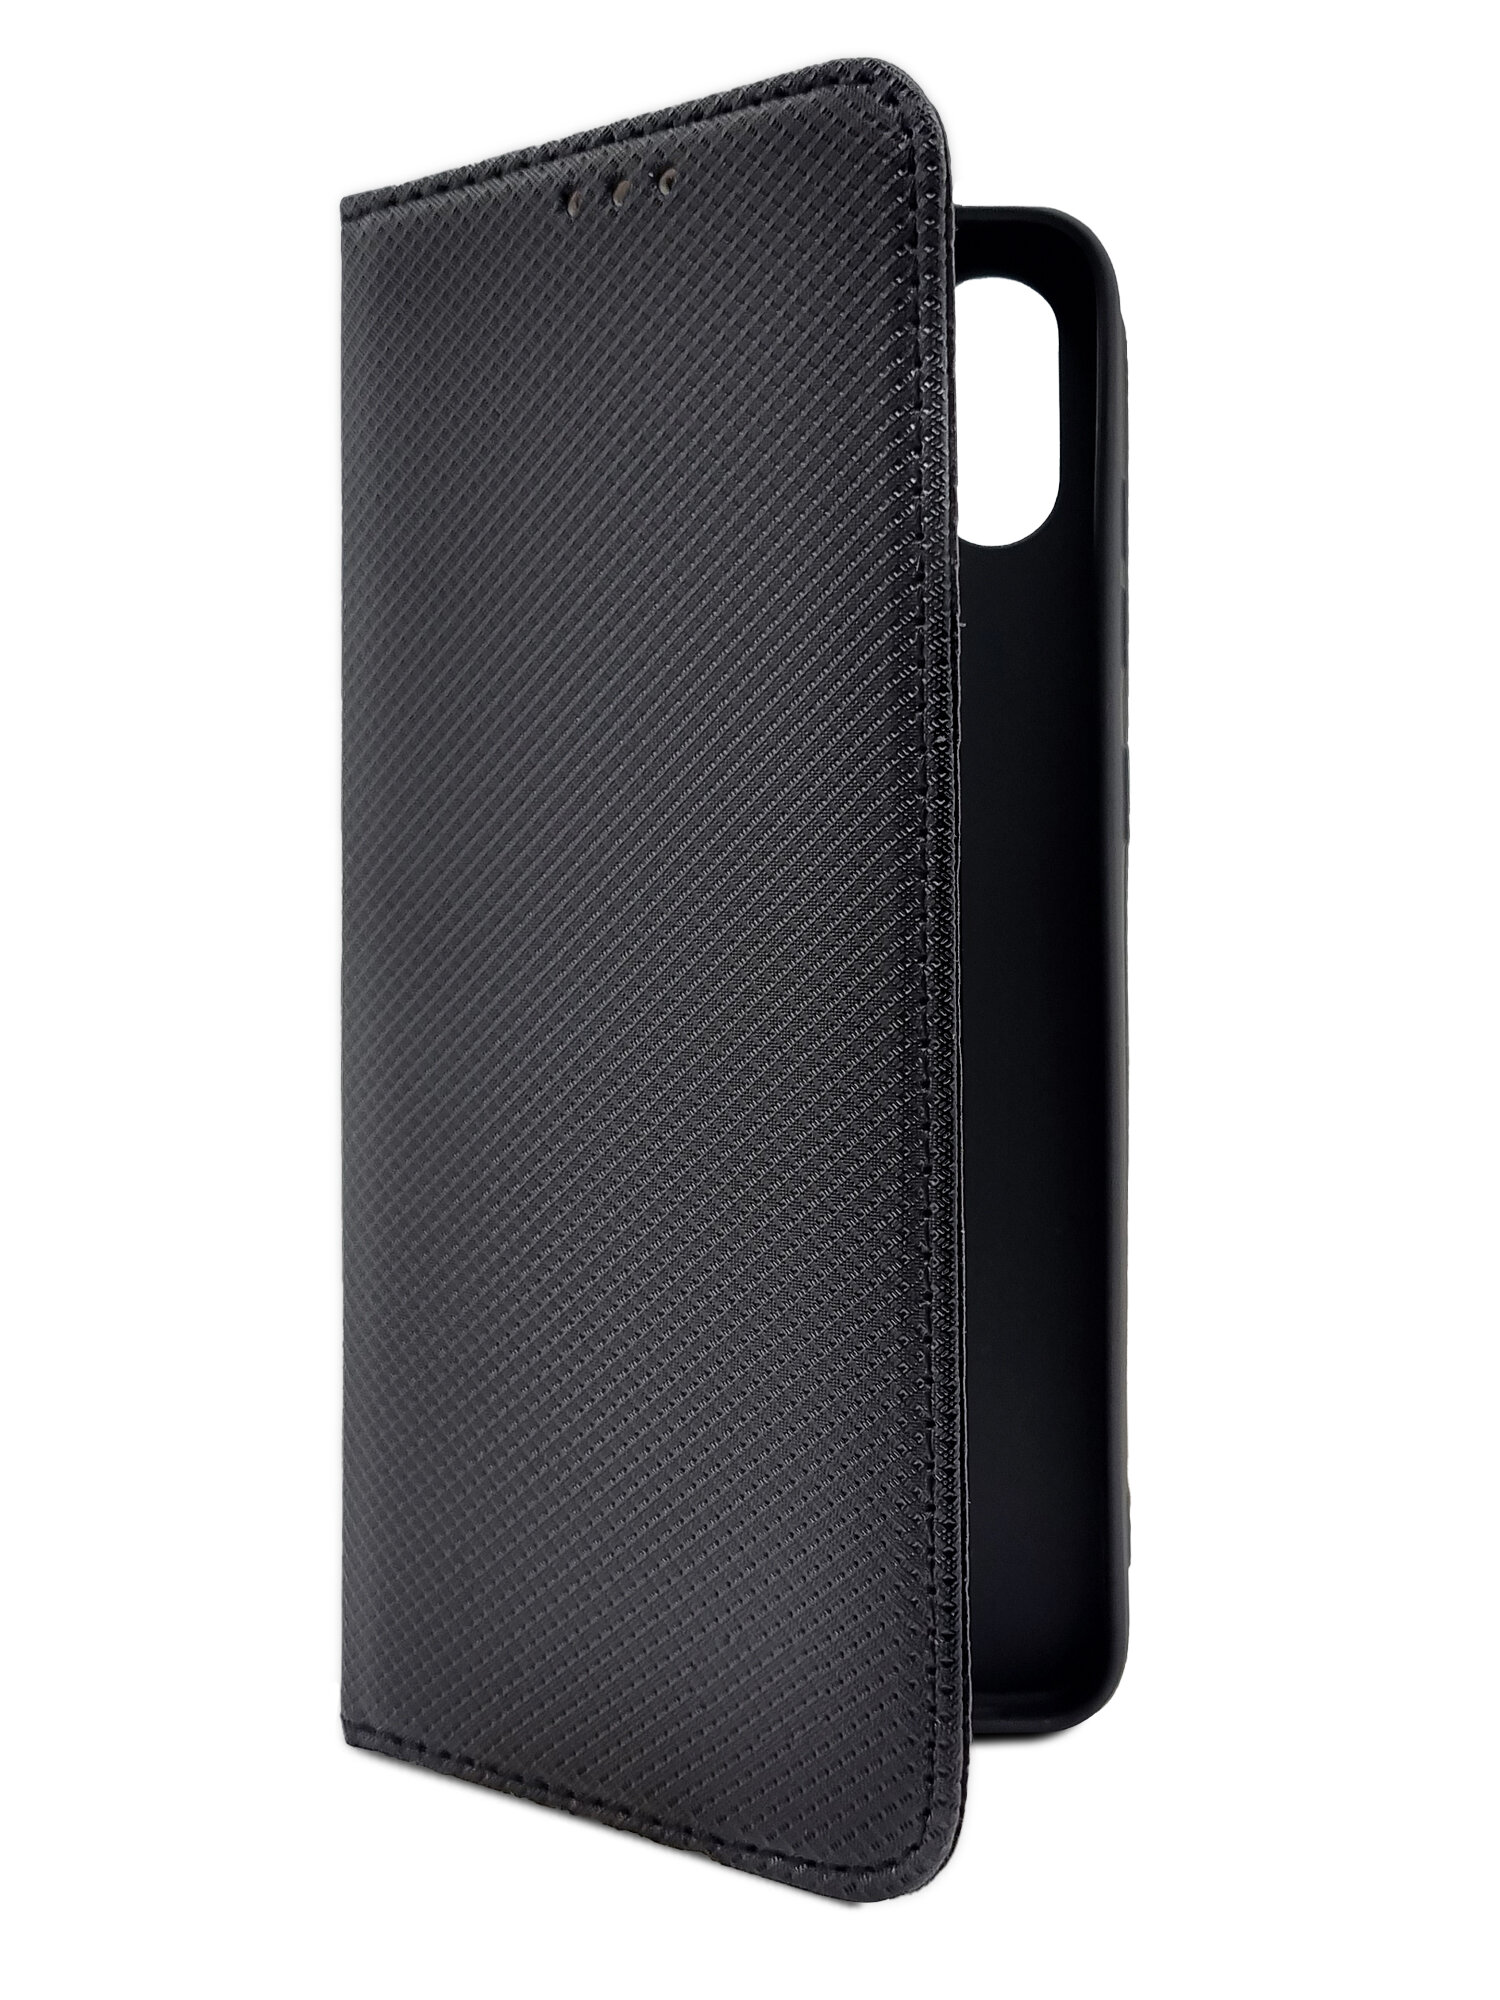 Чехол на Samsung Galaxy A05 (Самсунг Галакси А05) черный книжка экокожа с функцией подставки отделением для карт и магнитами Book case плетенка, Brozo